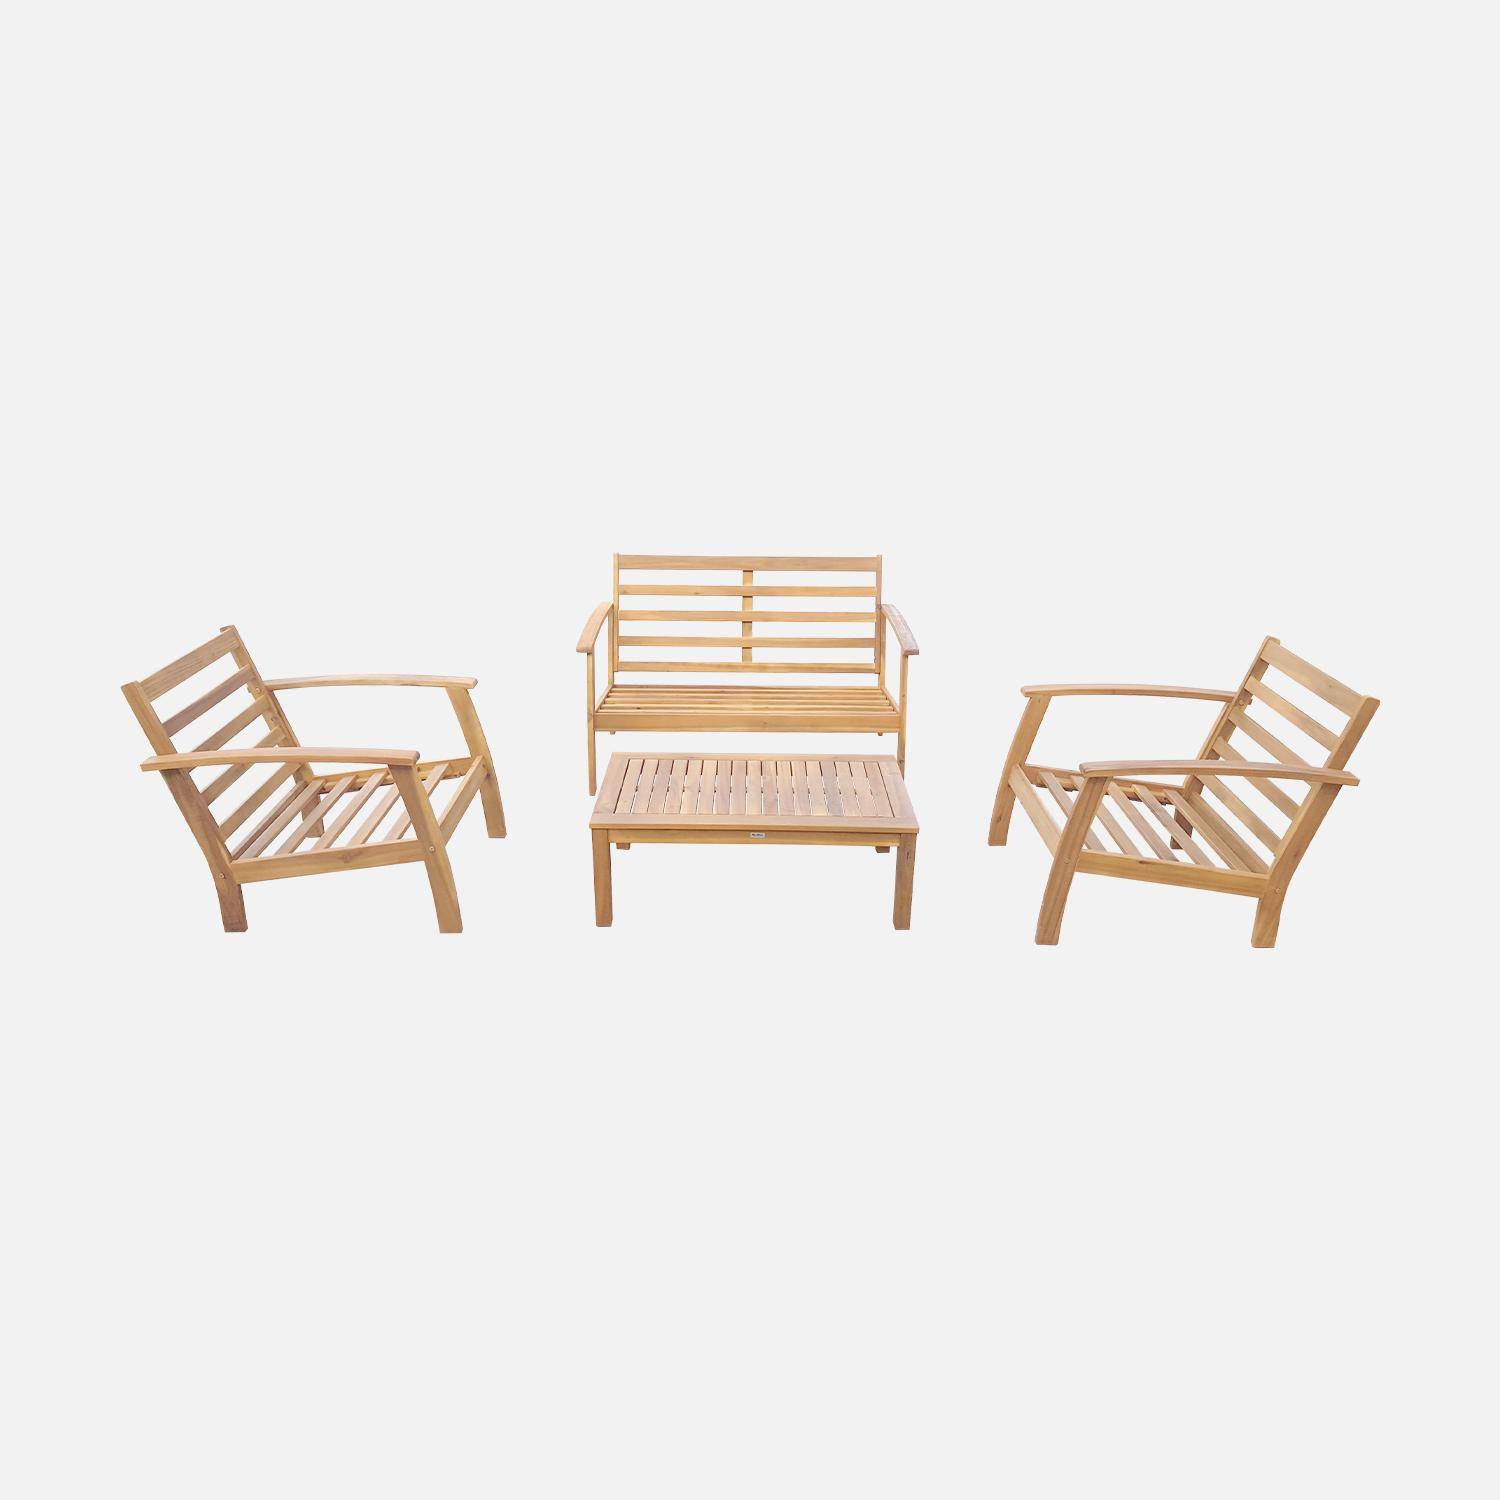 Salon de jardin en bois 4 places - Ushuaïa - Coussins écrus, canapé, fauteuils et table basse en acacia, design Photo7